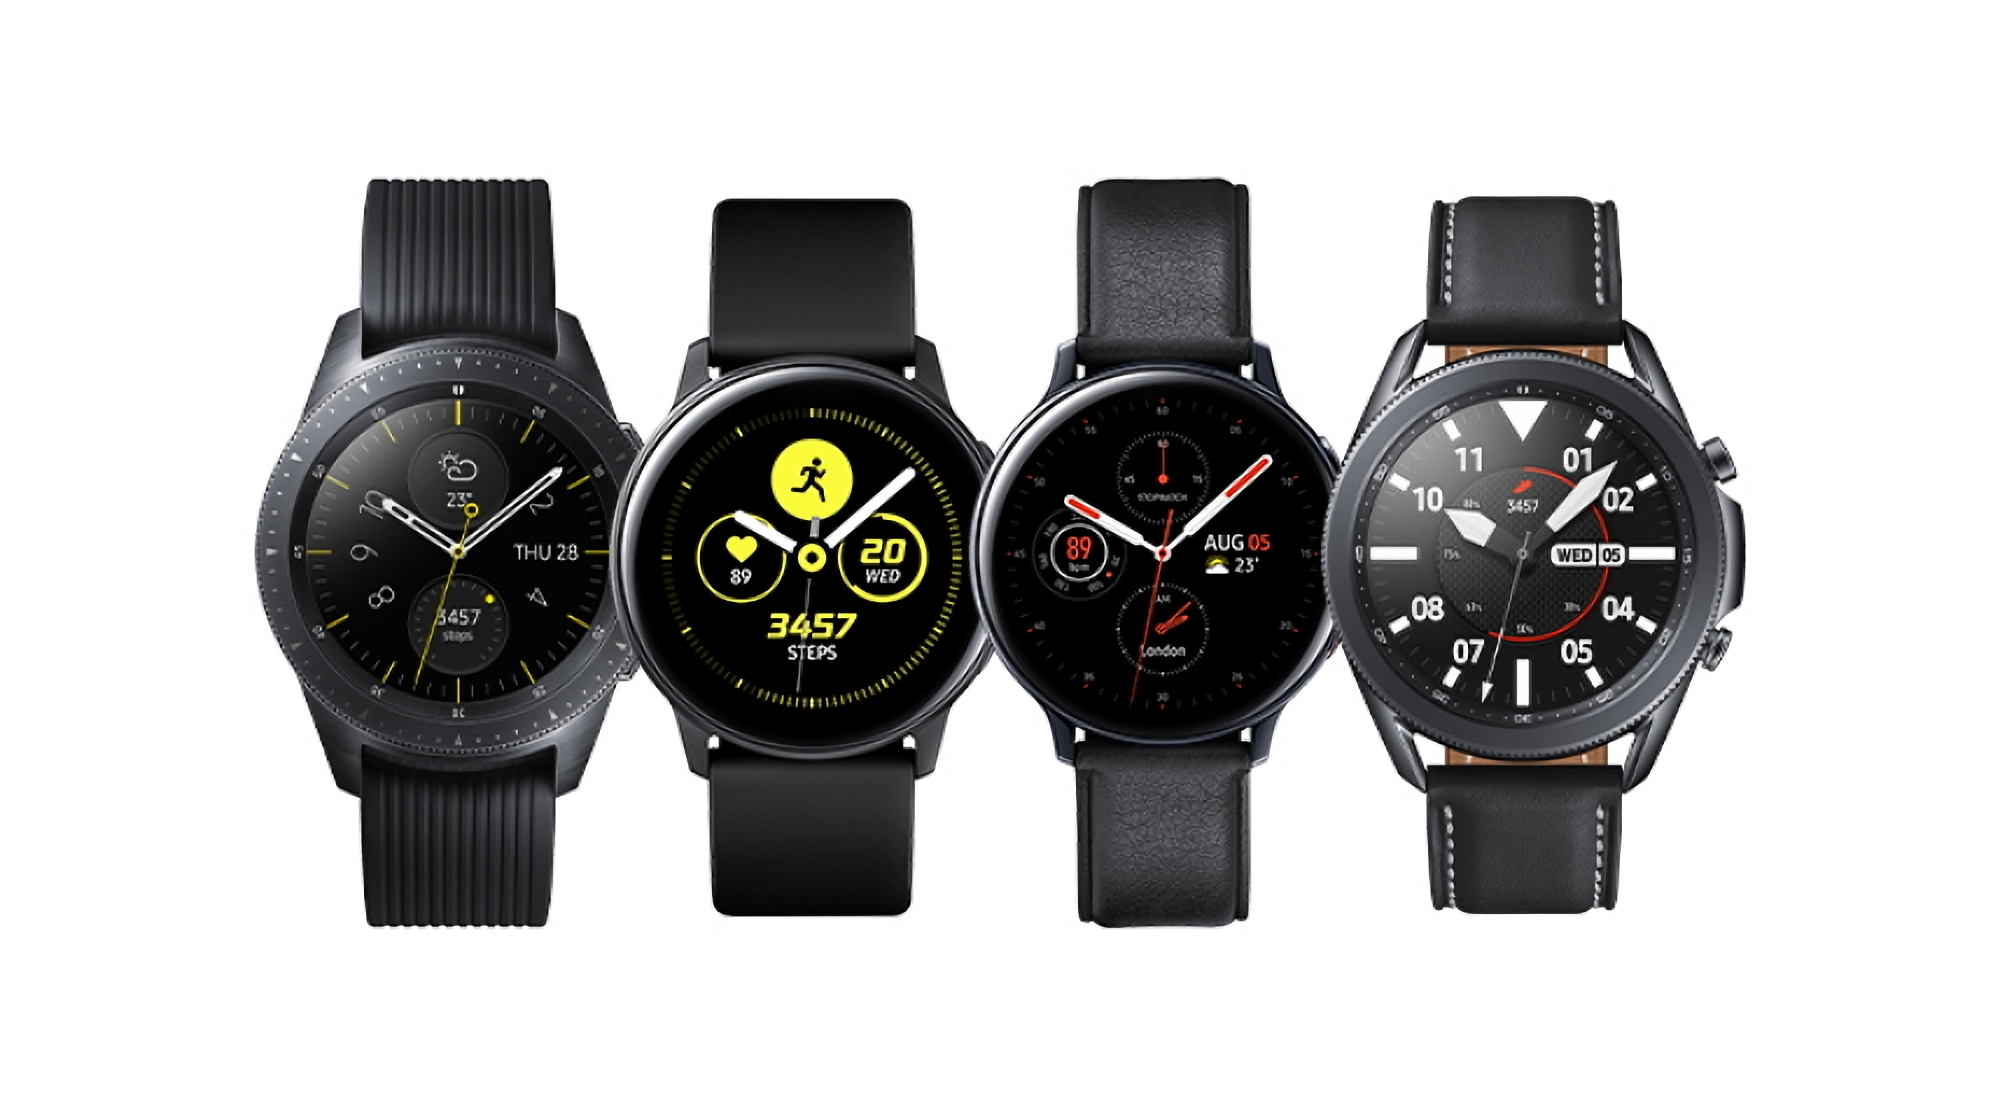 Gli smartwatch originali Samsung Galaxy Watch e Galaxy Watch Active iniziano a ricevere un nuovo aggiornamento software